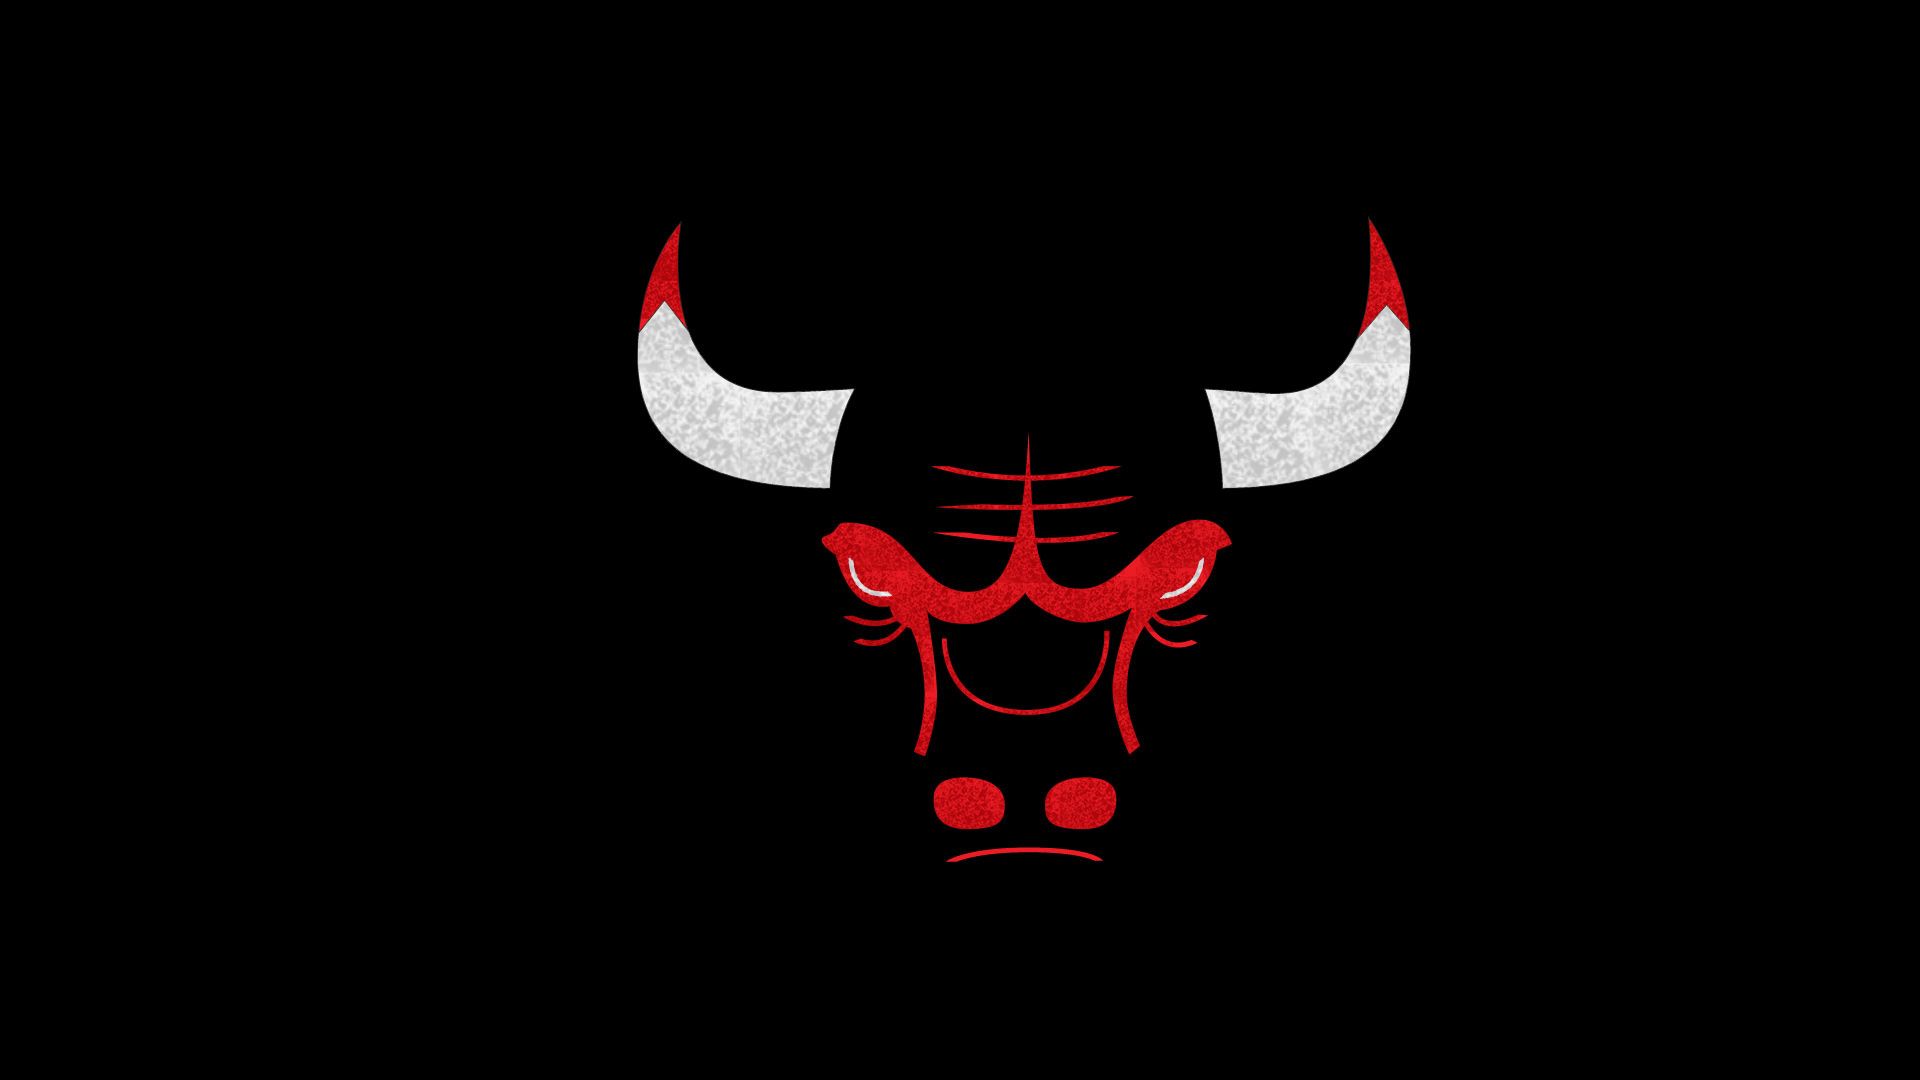 Fondo de pantalla de los Chicago Bulls 1920x1080